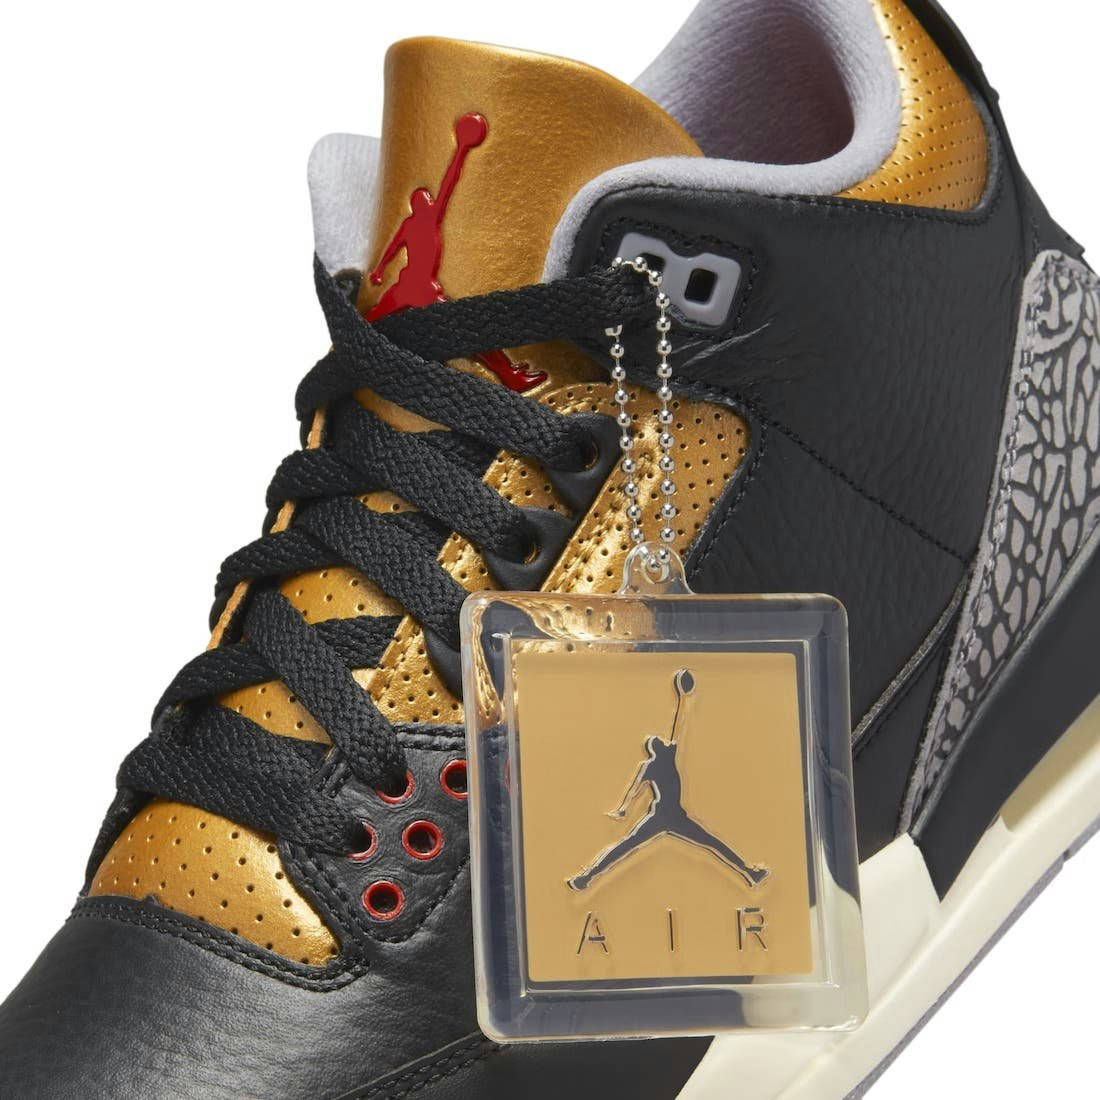 Air Jordan 3 "Black Gold"